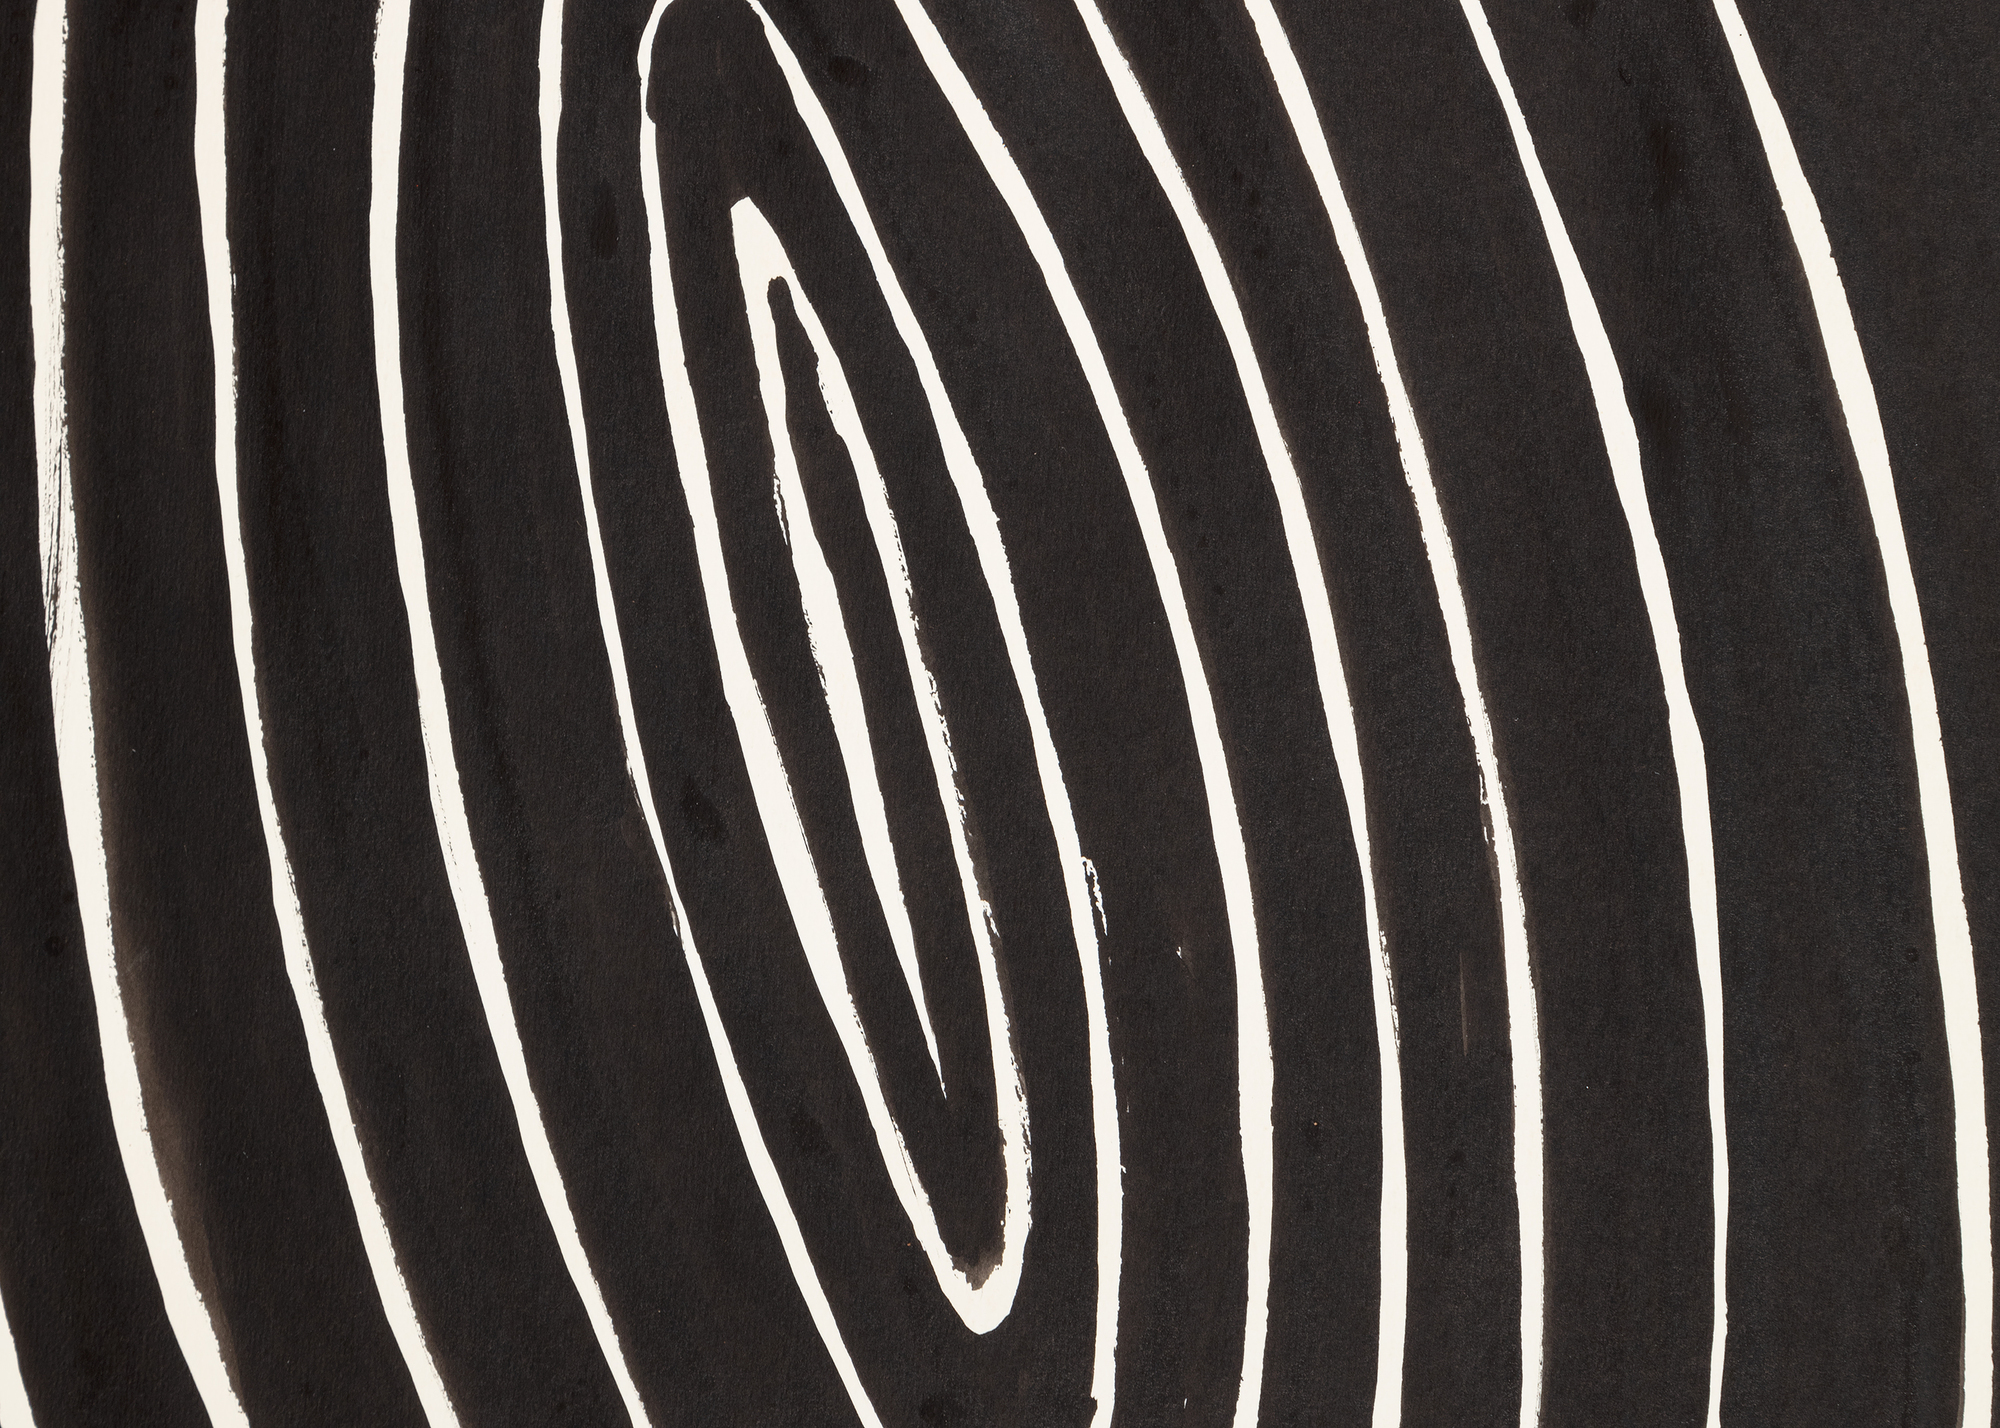 ALEXANDER CALDER - Die ovale Spirale - Gouache und Tinte auf Papier - 43 1/4 x 29 1/2 in.